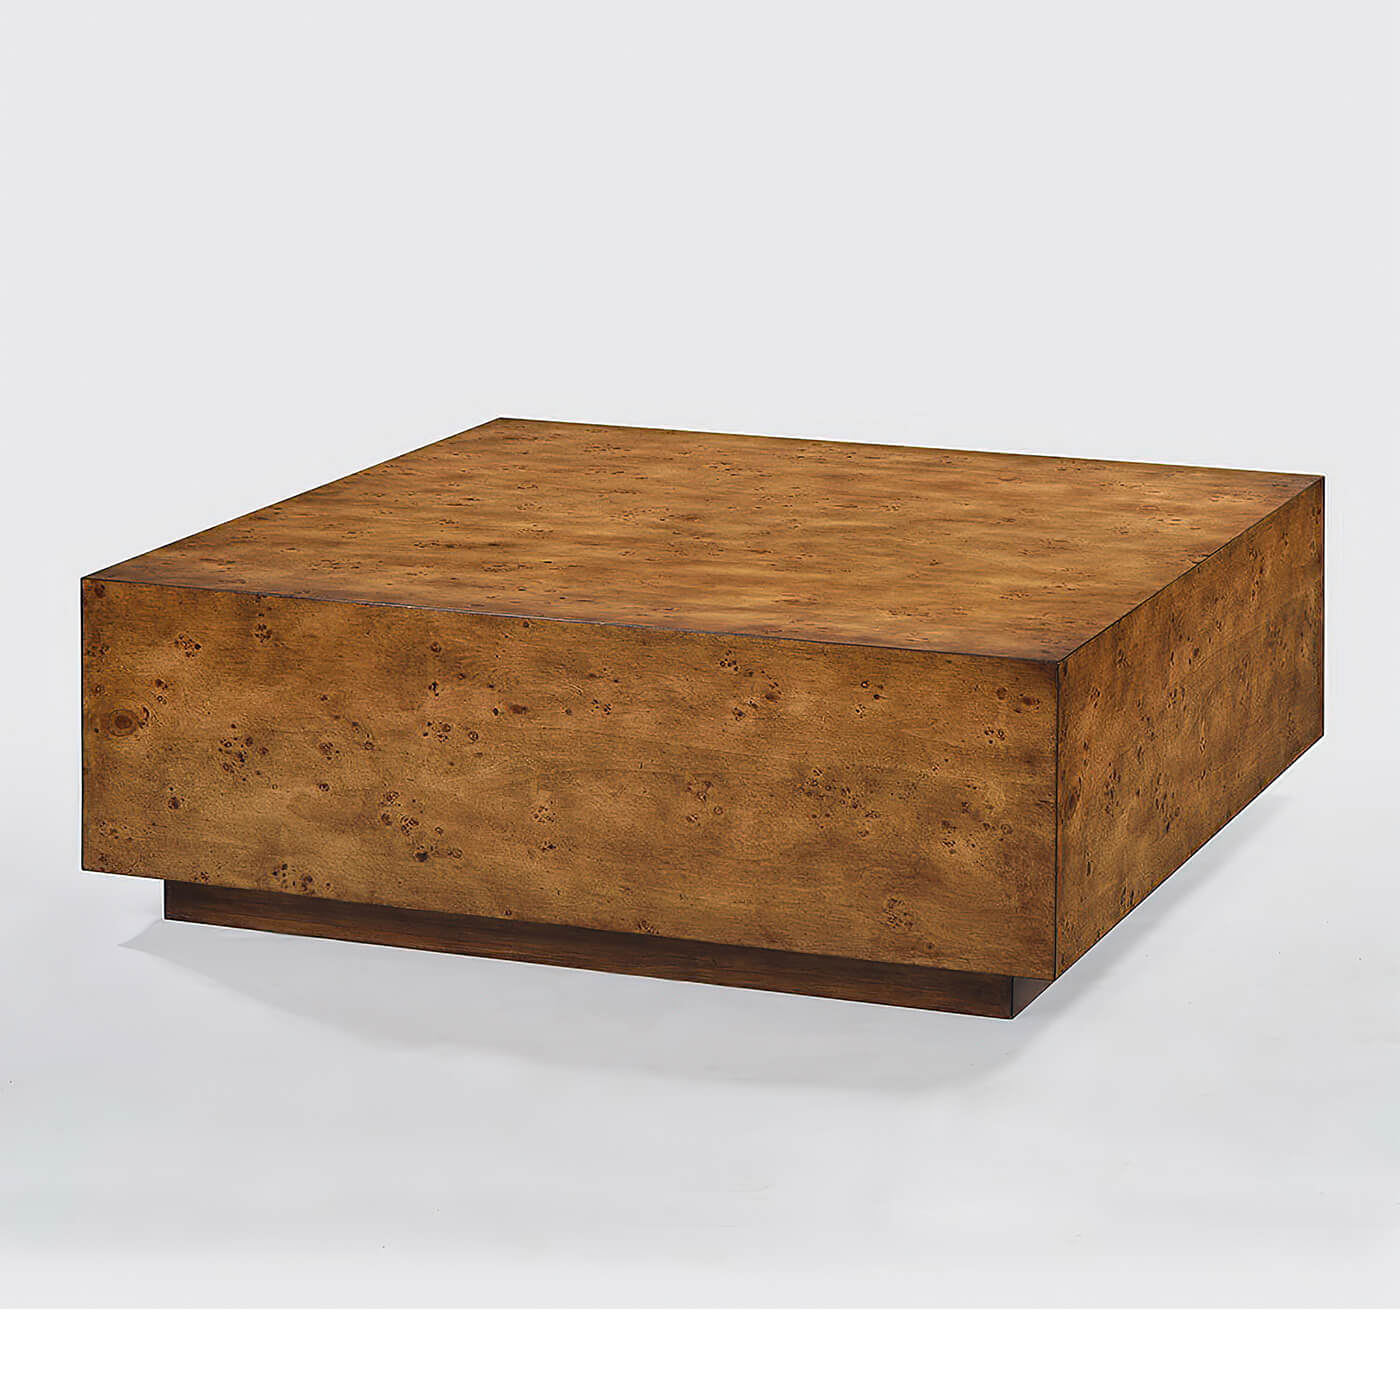 Rustic Modern square coffee table - Burl Wood - English Georgian America